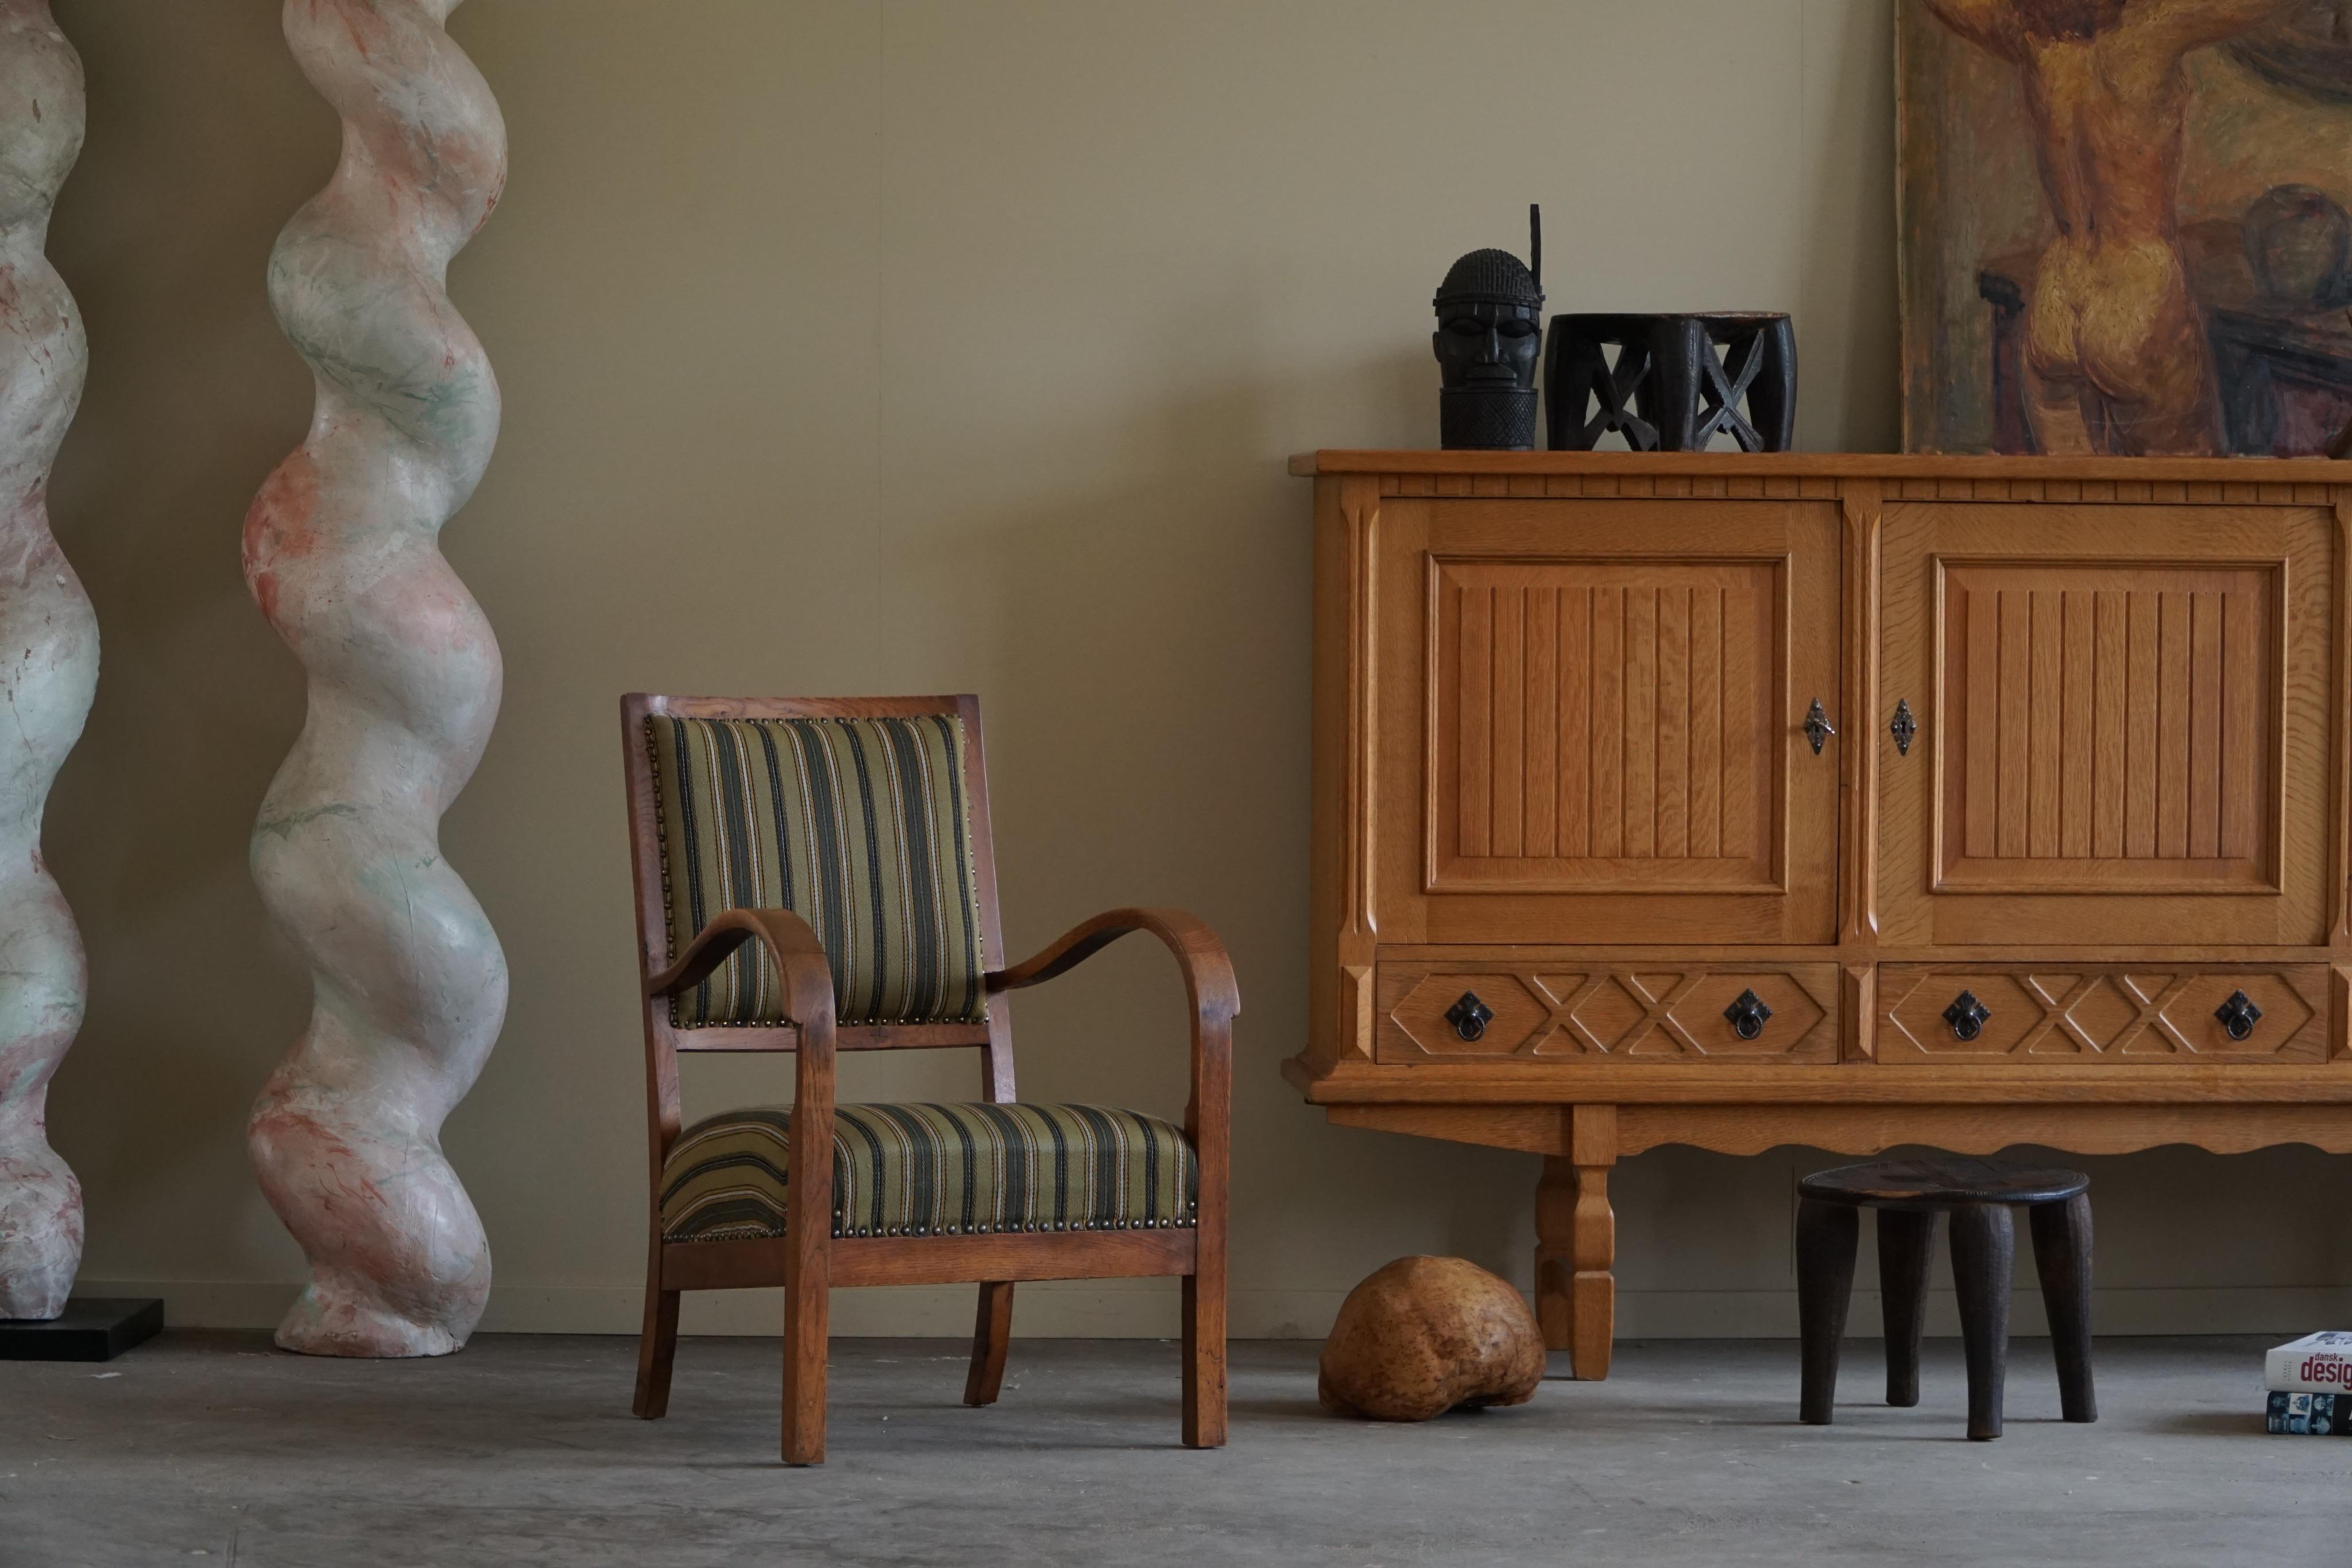 Ein fabelhafter Sessel aus massiver Eiche und Stoff. Gefertigt von einem erfahrenen dänischen Tischler, mit einer Kombination aus hochwertigem Eichenholz und weichen, bequemen Stoffbezügen. Hergestellt in den 1950er Jahren.

Dieser Stuhl zeichnet